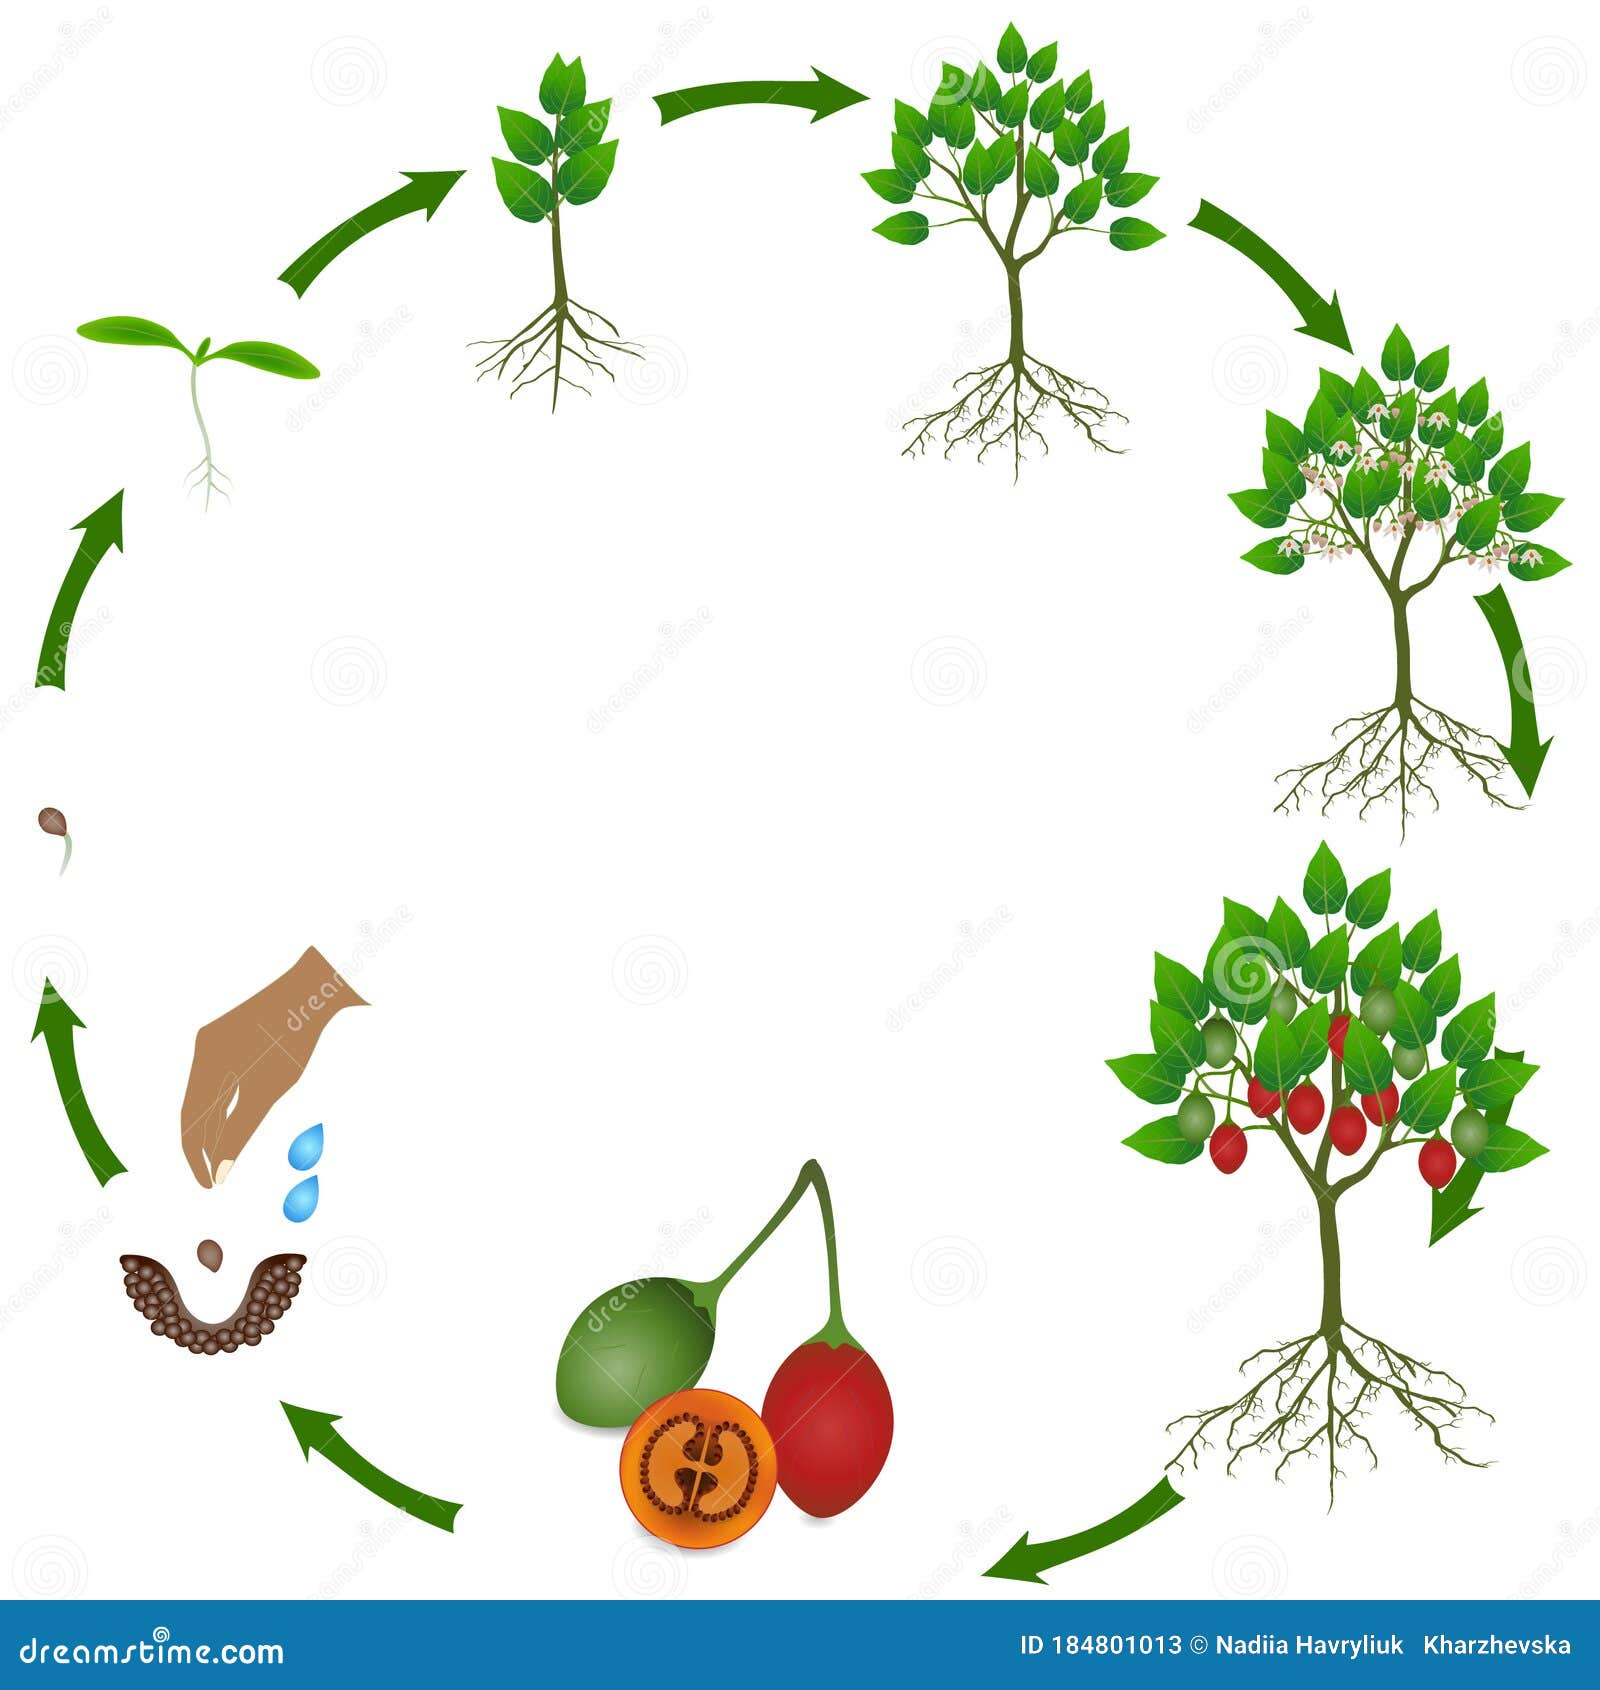 Жизненный цикл овощных растений по маркову. Цикл растений для детей. Жизненный цикл растений для детей. Жизненный цикл растений для дошкольников. Жизненный цикл цветка для дошкольников.